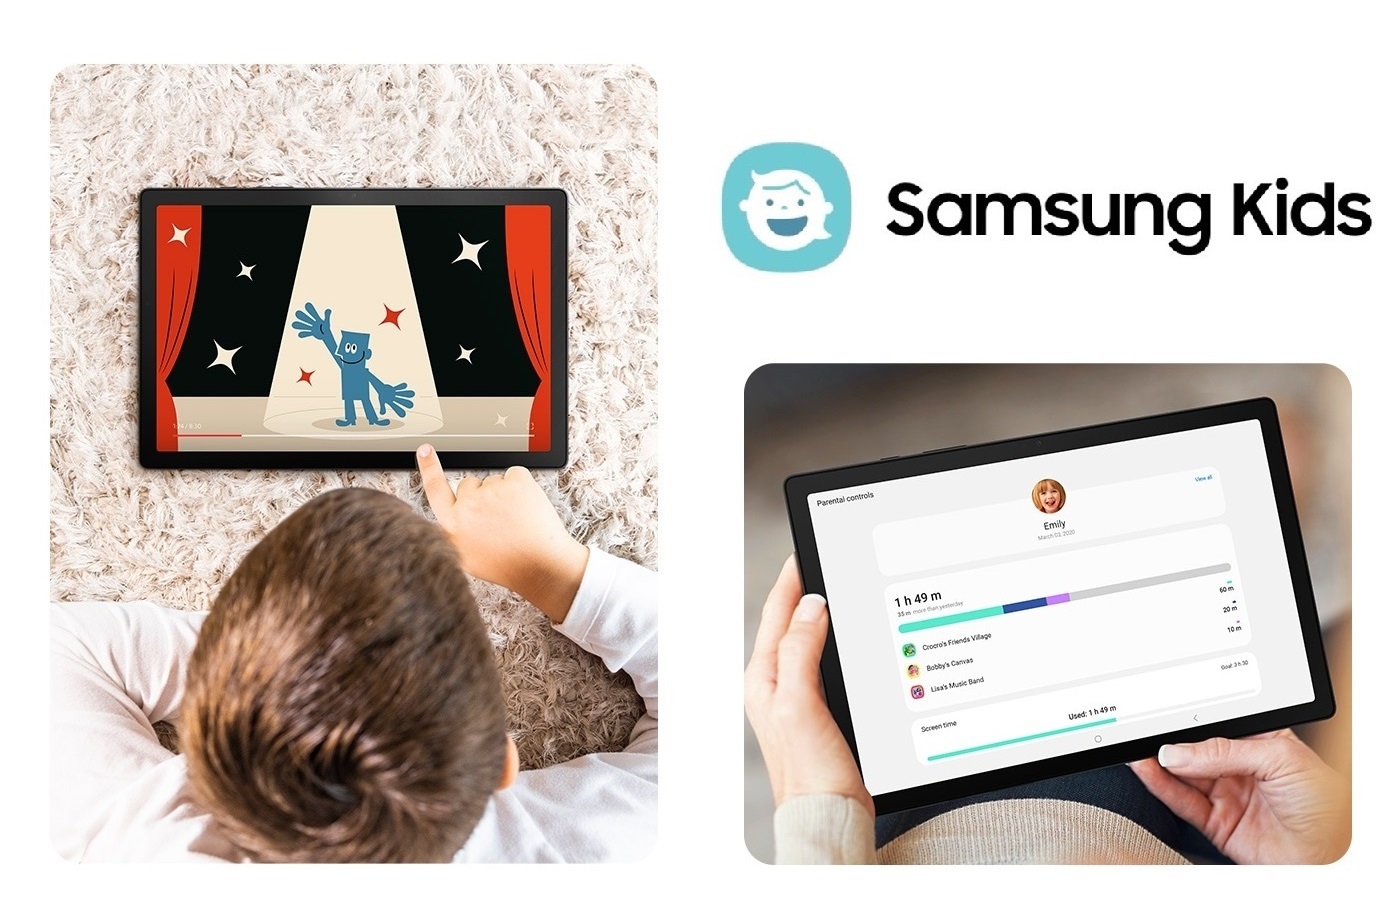 Samsung Galaxy Tab A8 obsahuje aplikáciu Samsung Kids, ktorá je určená pre zábavný rozvoj a vzdelávanie detí v úplne bezpečnom prostredí